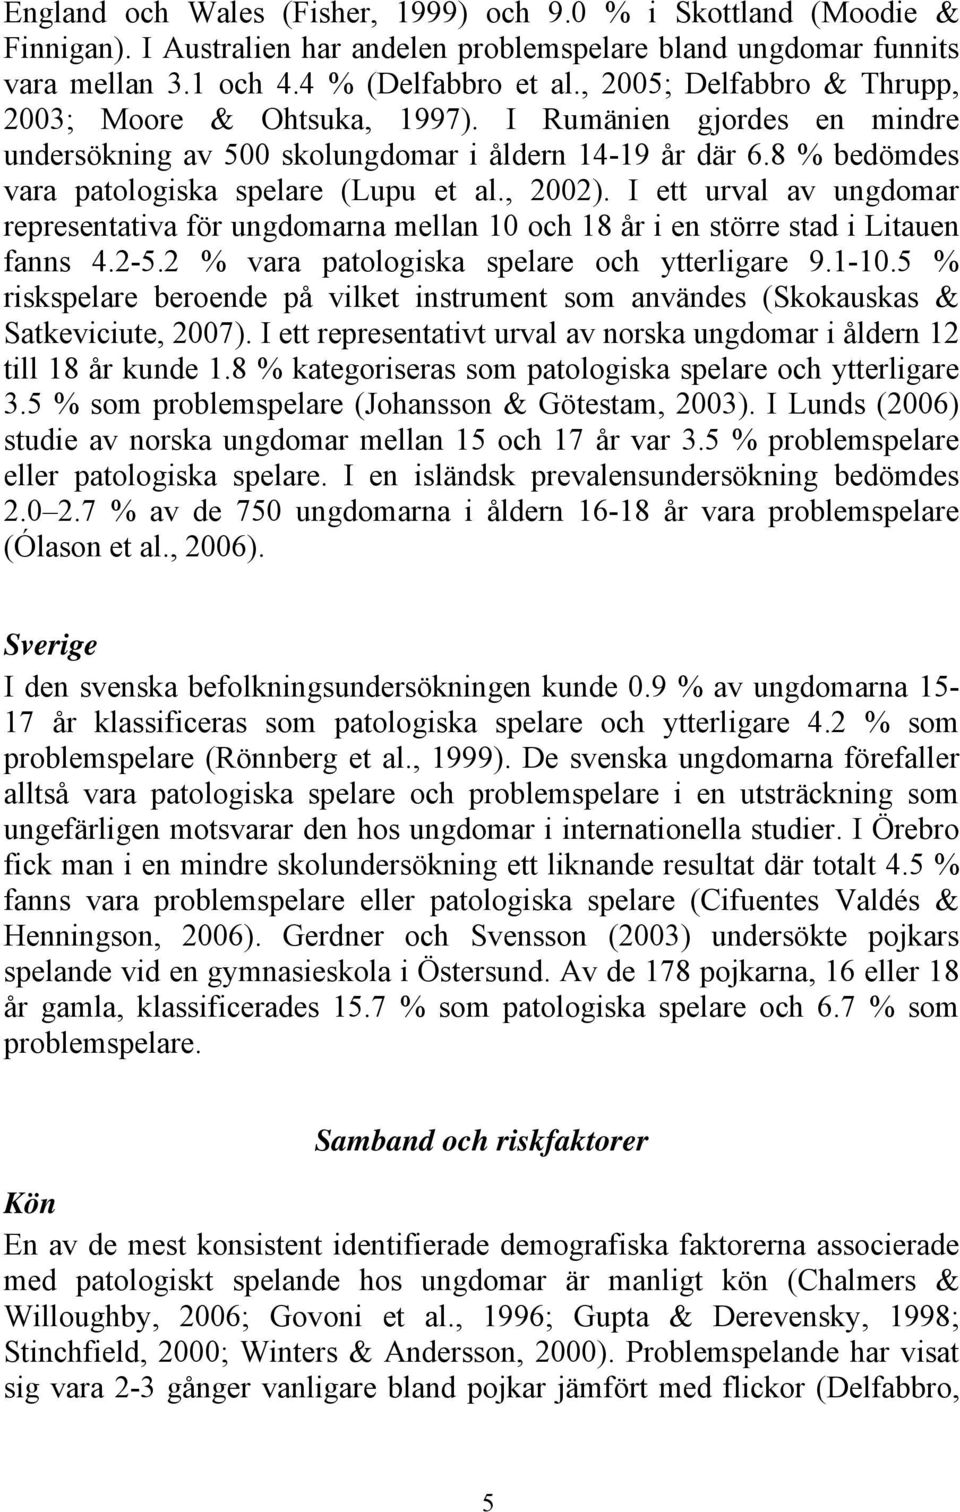 , 2002). I ett urval av ungdomar representativa för ungdomarna mellan 10 och 18 år i en större stad i Litauen fanns 4.2-5.2 % vara patologiska spelare och ytterligare 9.1-10.